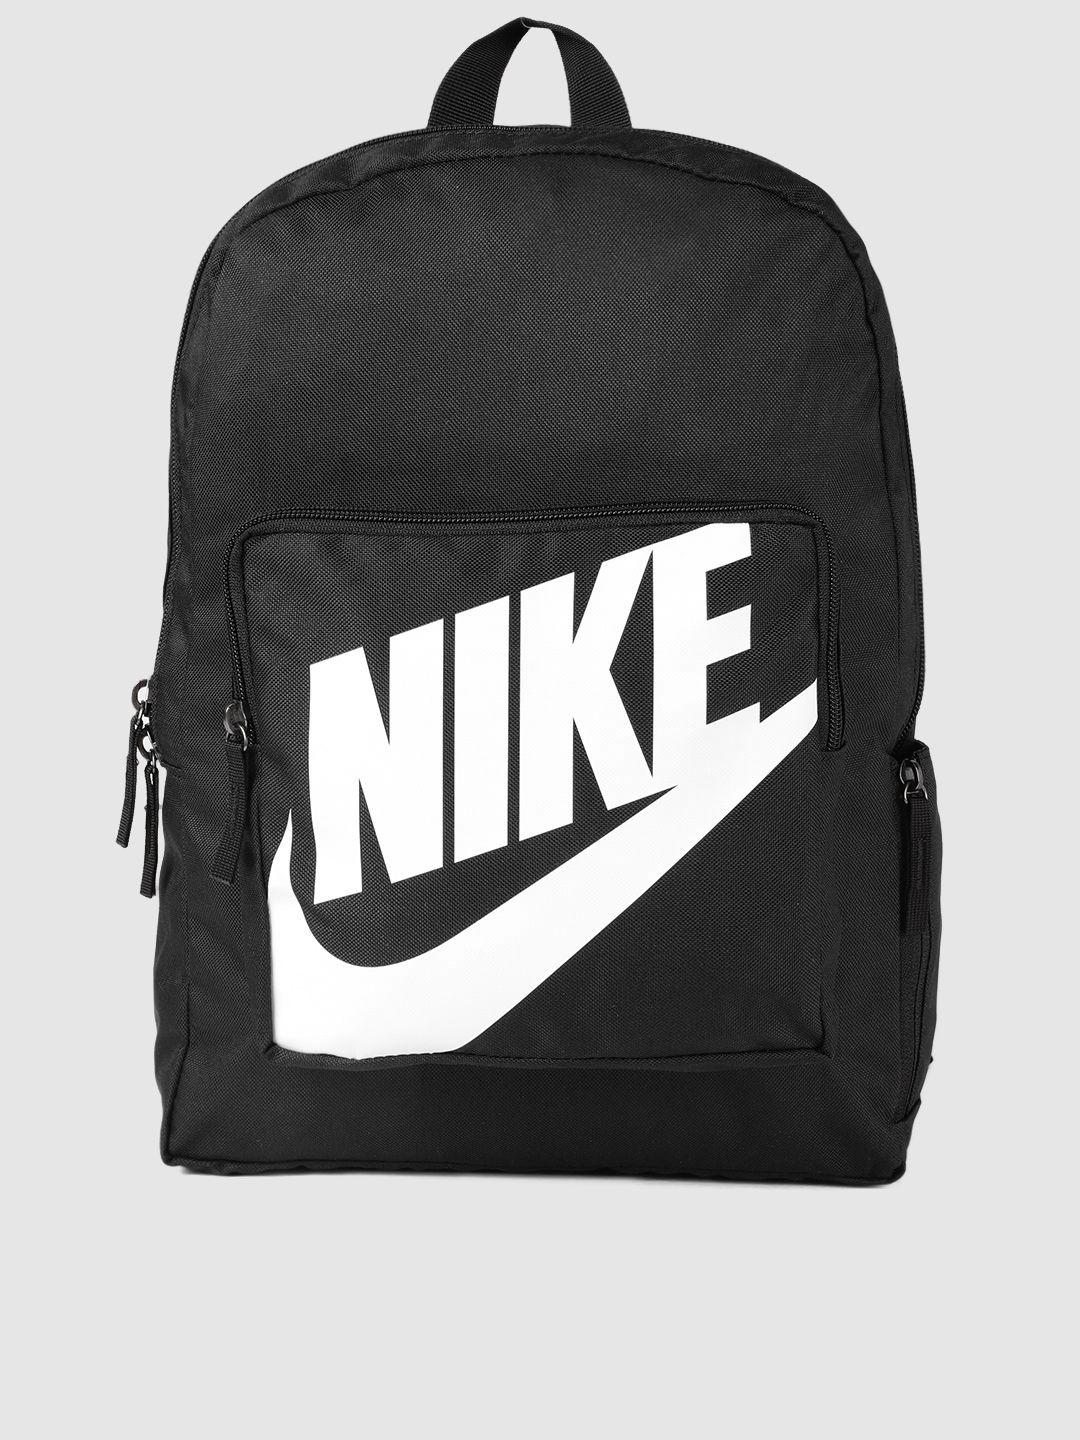 nike kids classic printed backpack- 16l